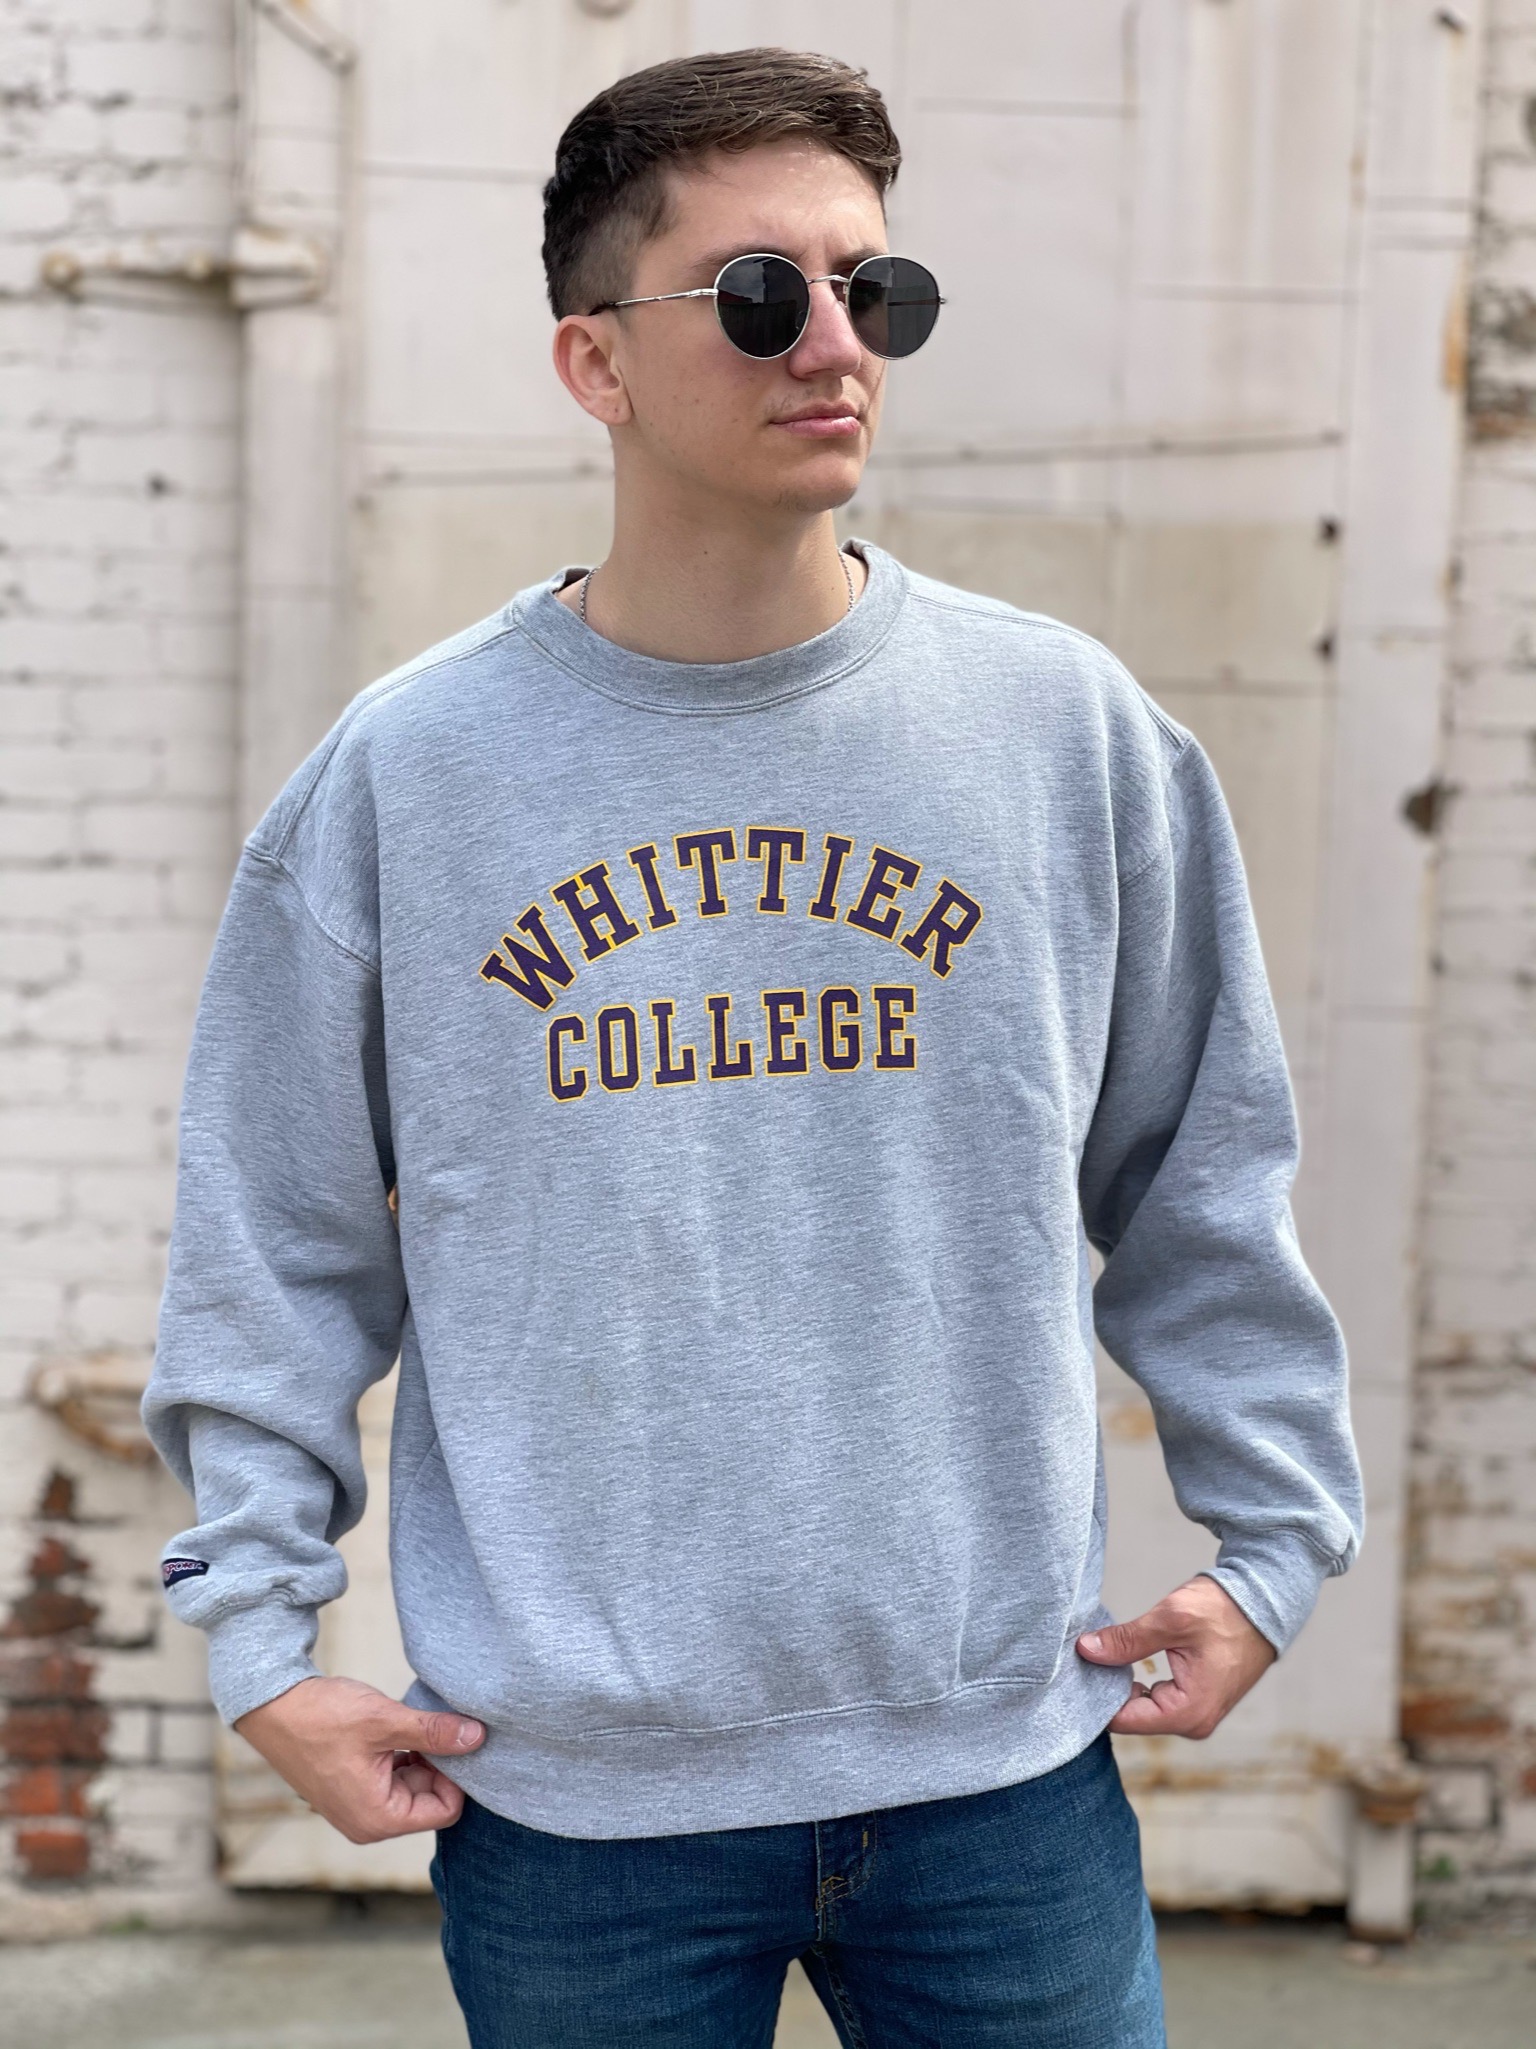 Whittier College Sweatshirt - M/L